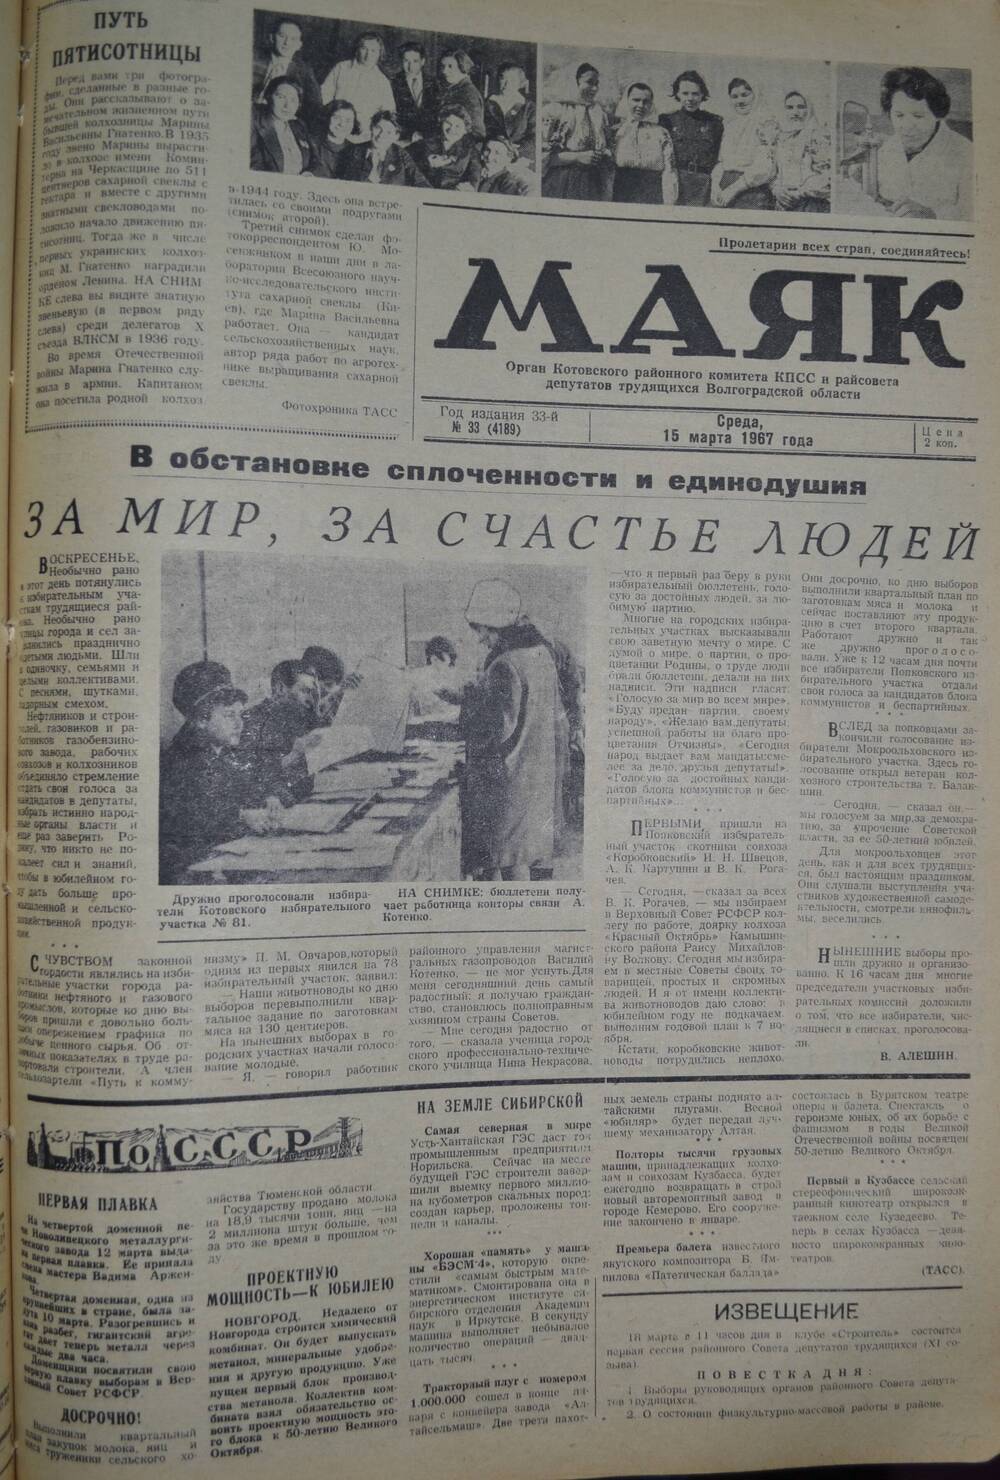 Газета Маяк № 33 (4189). Среда, 15 марта 1967 года.